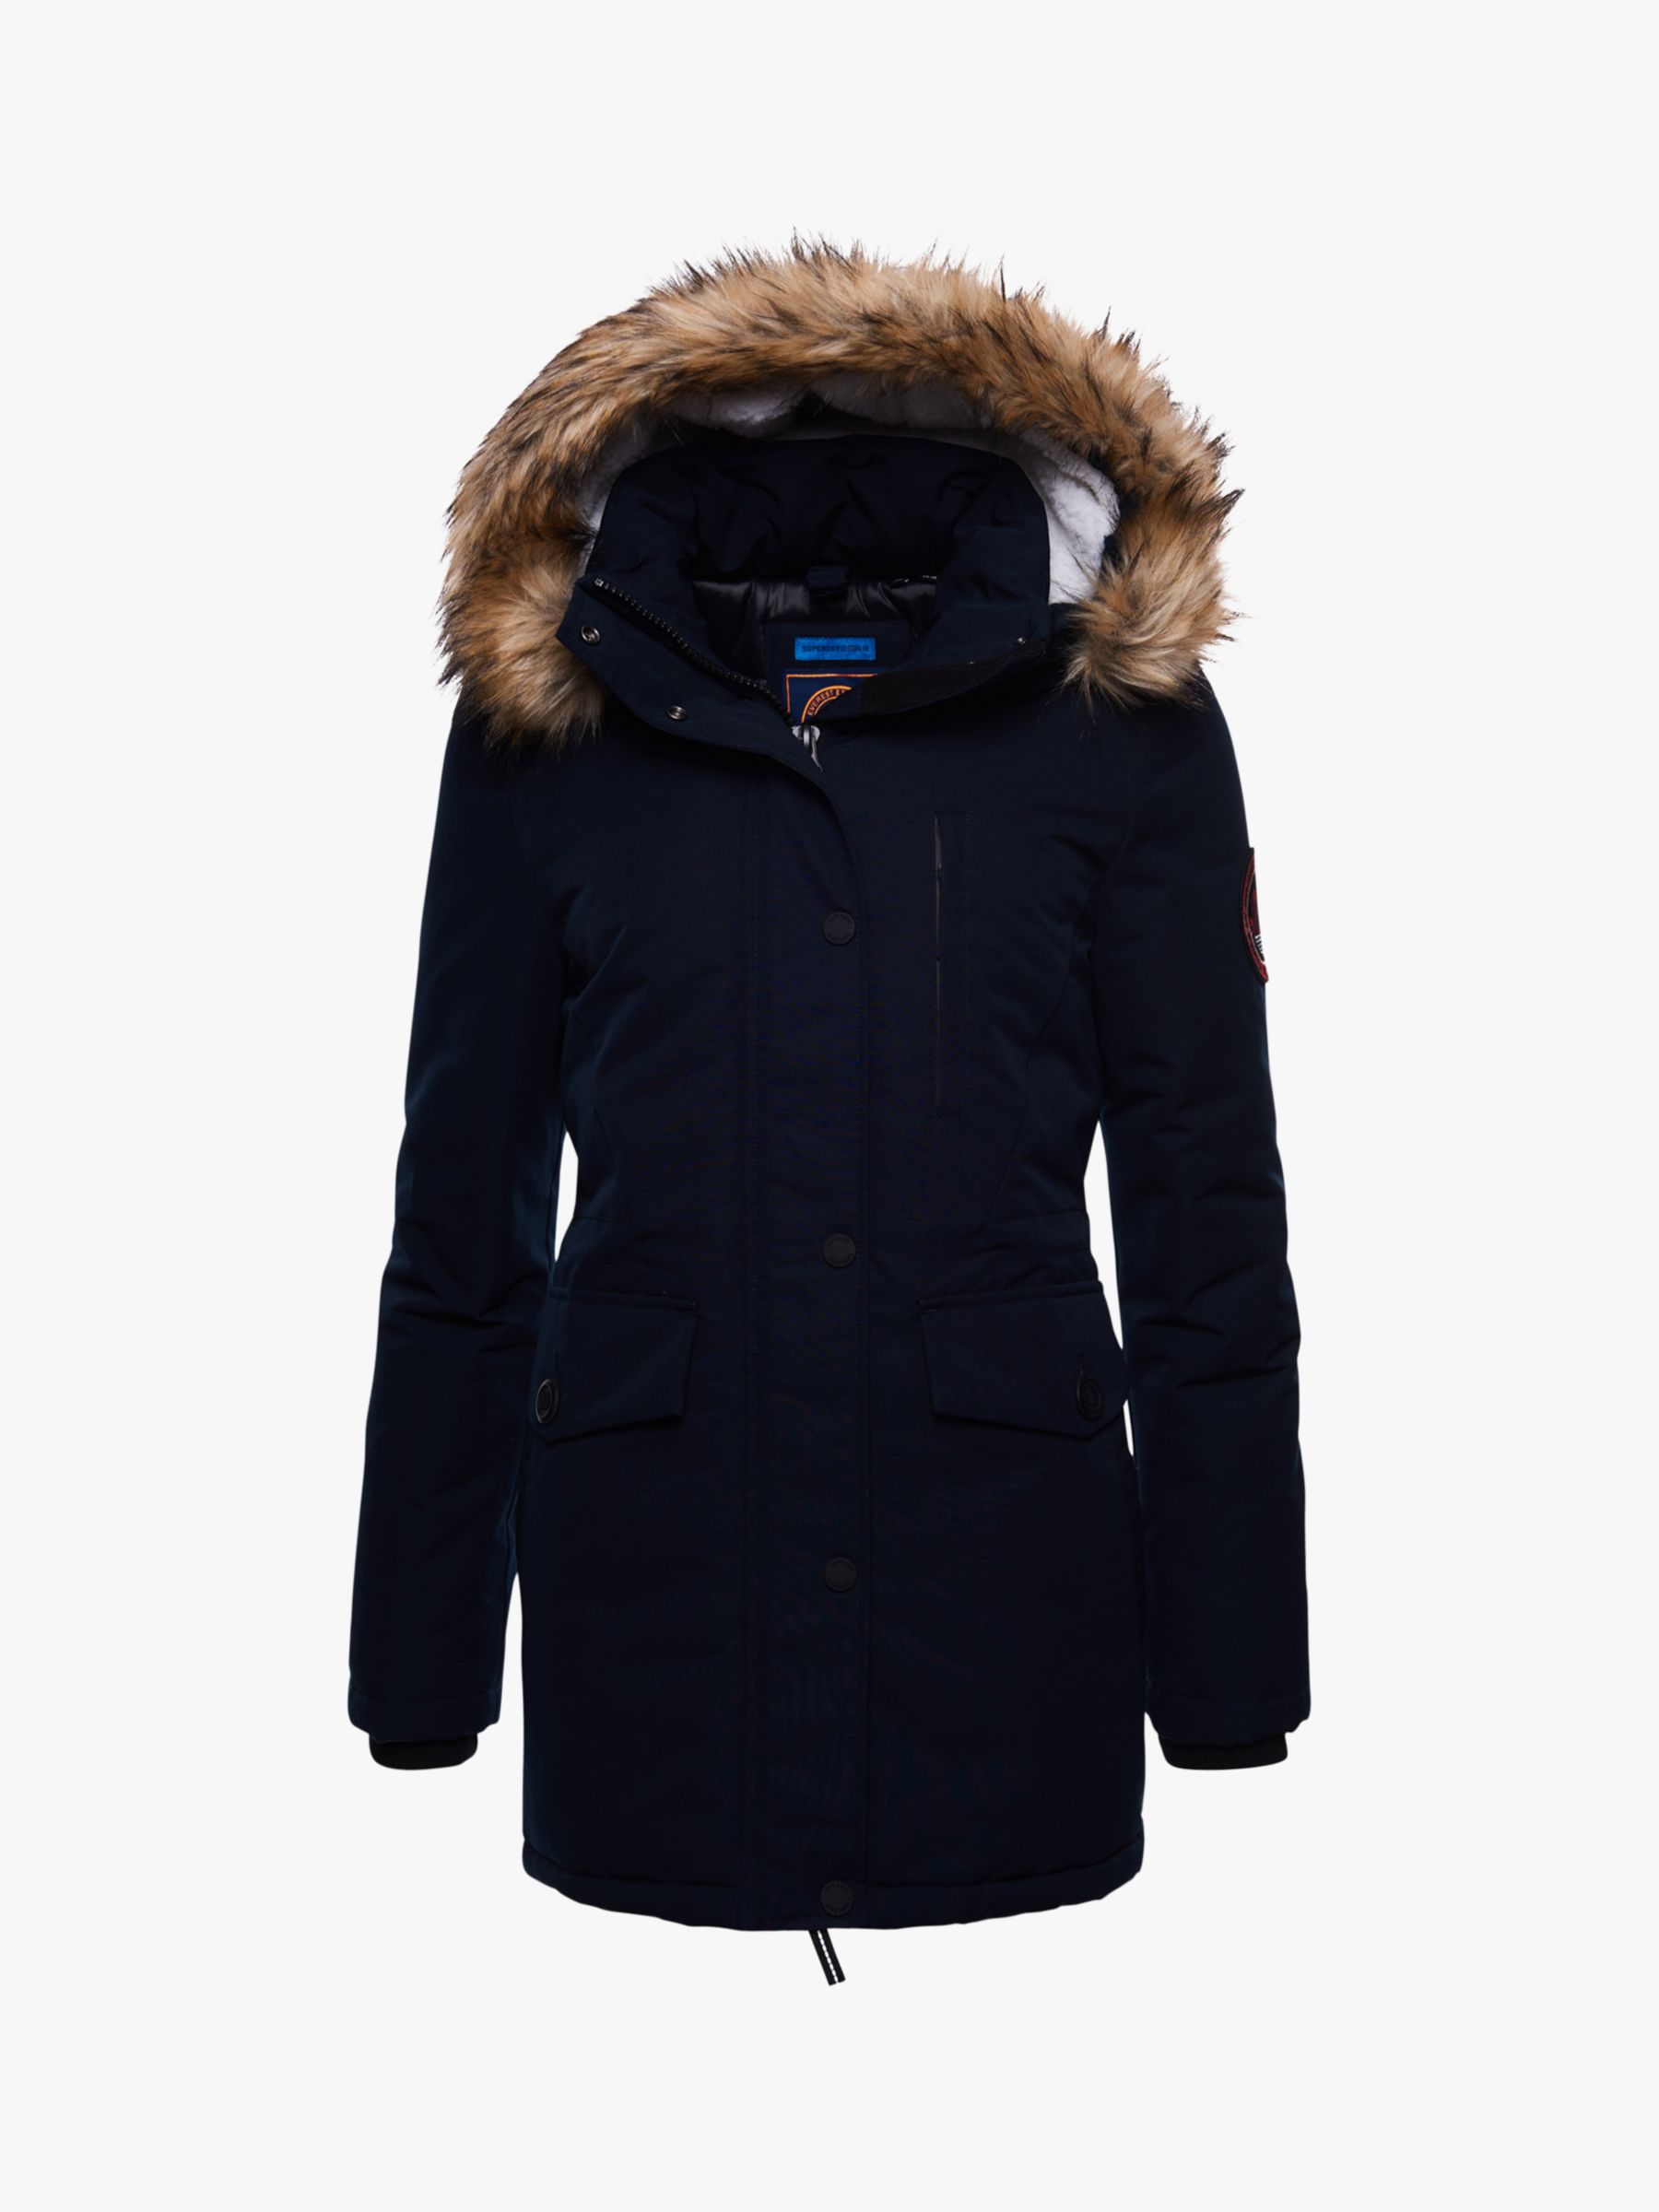 Buy Superdry Original & Vintage Everest Faux Fur Parka Jacket, Eclipse Navy Online at johnlewis.com